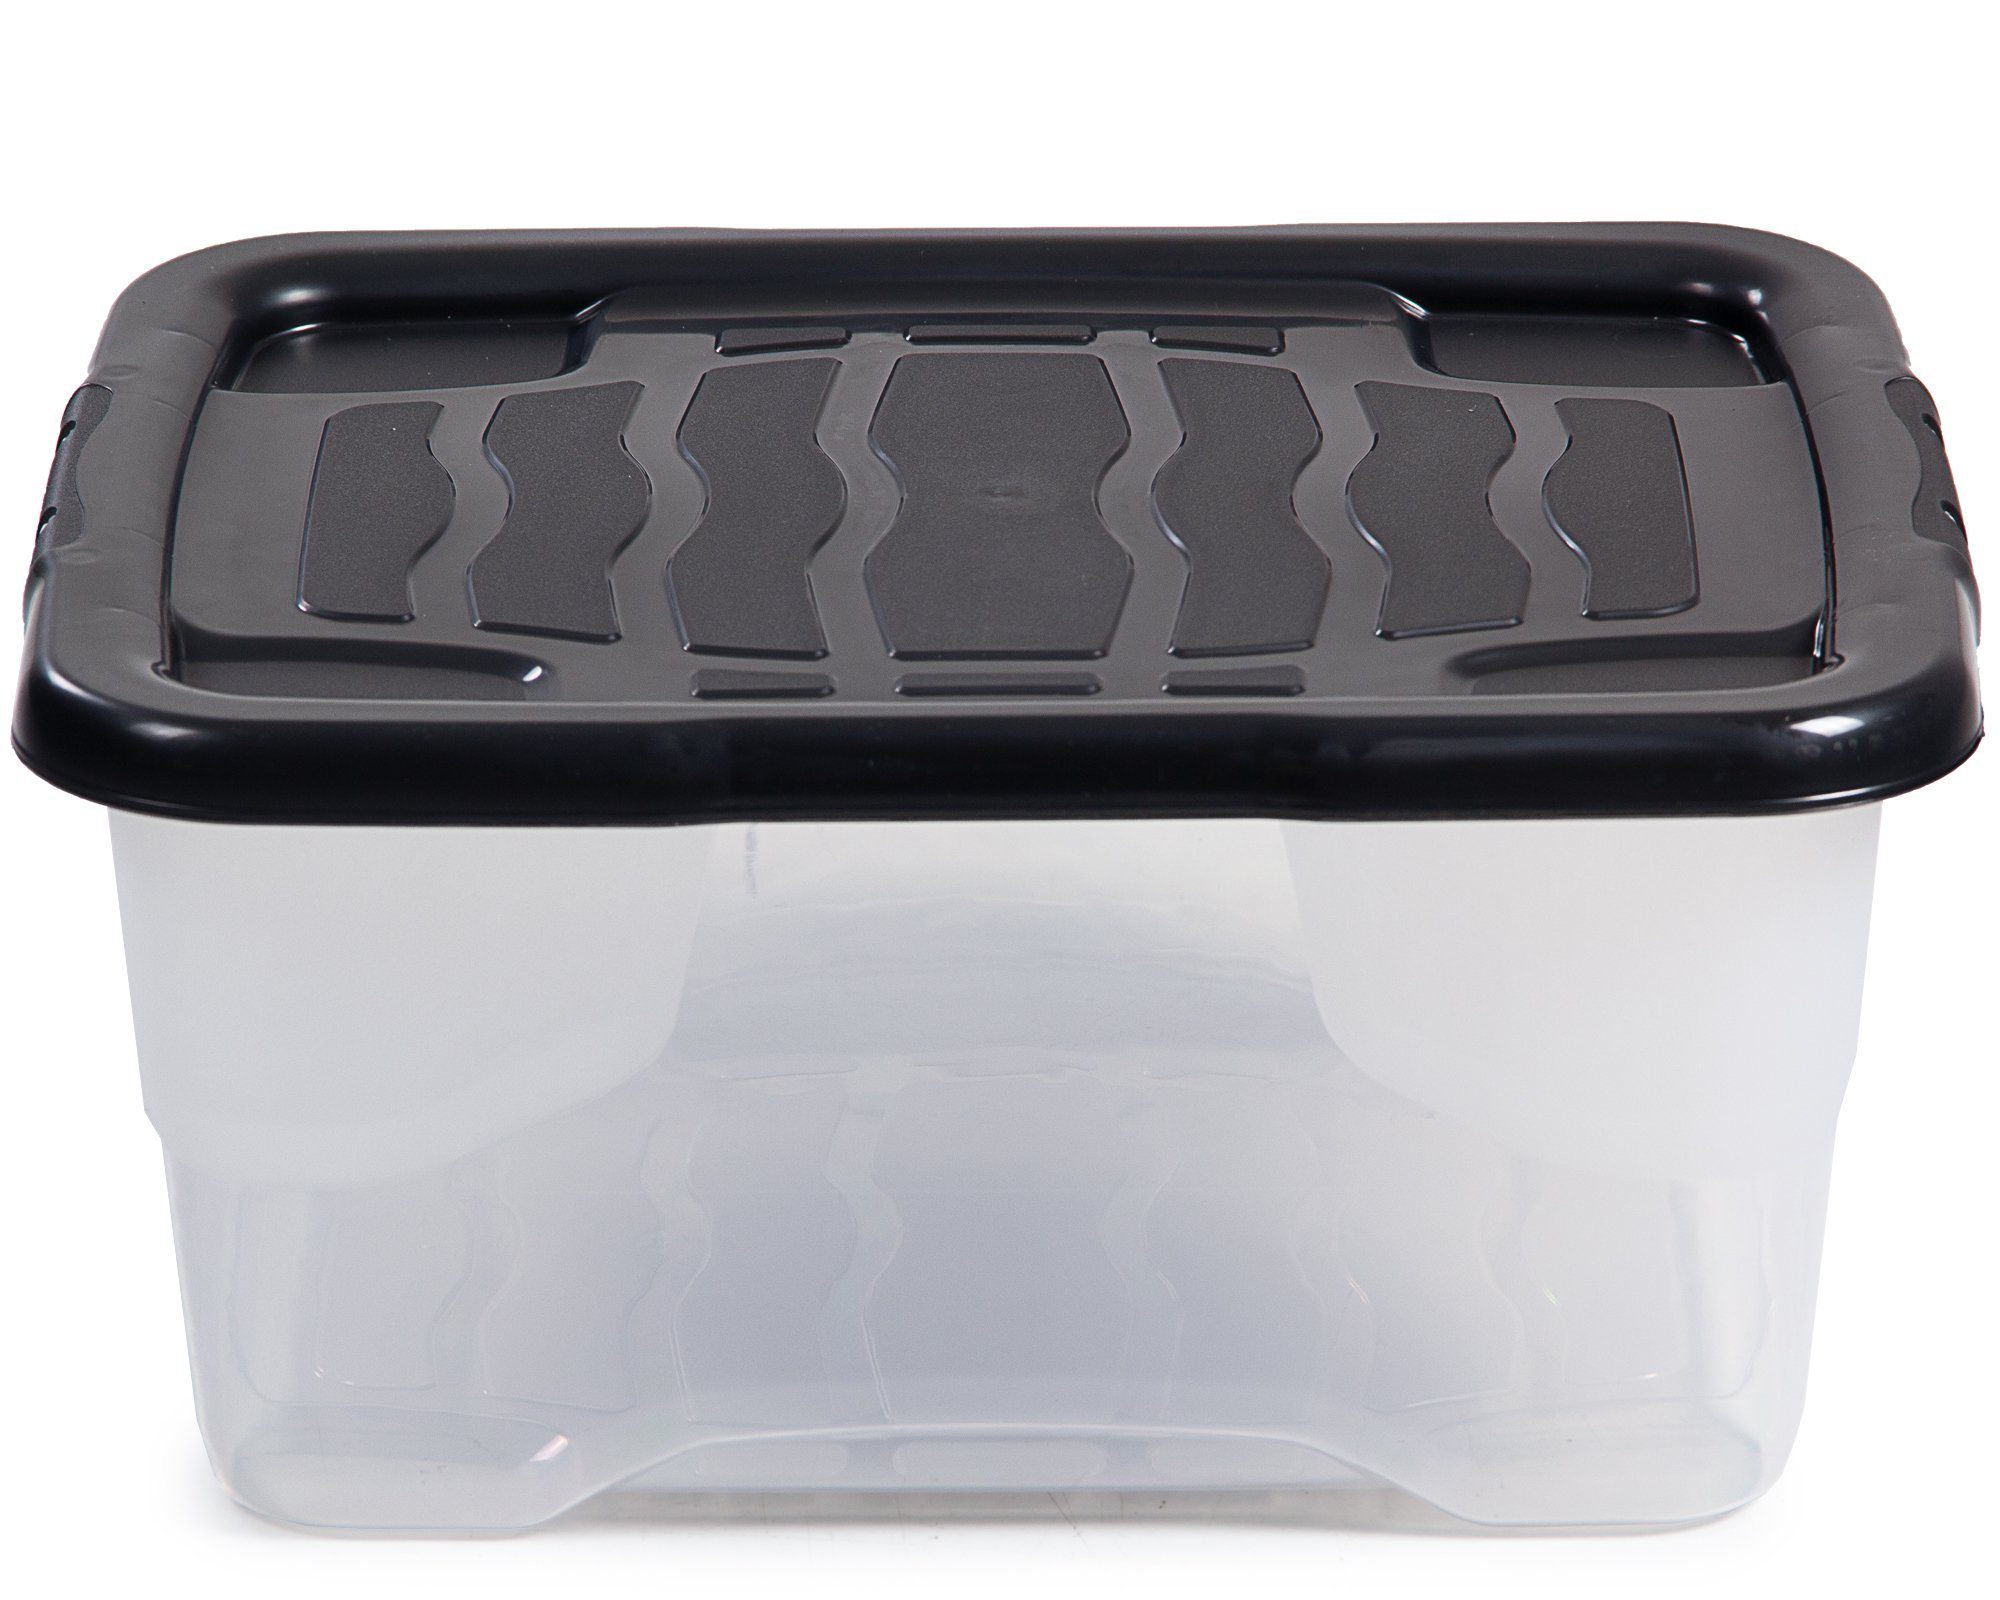 Strata Aufbewahrungsbox Aufbewahrungsbox Curve mit Deckel, 10 L, transparente Kunststoffbox, stapelbar, nestbar, Lagerbox 35x28x16cm, 10 liter